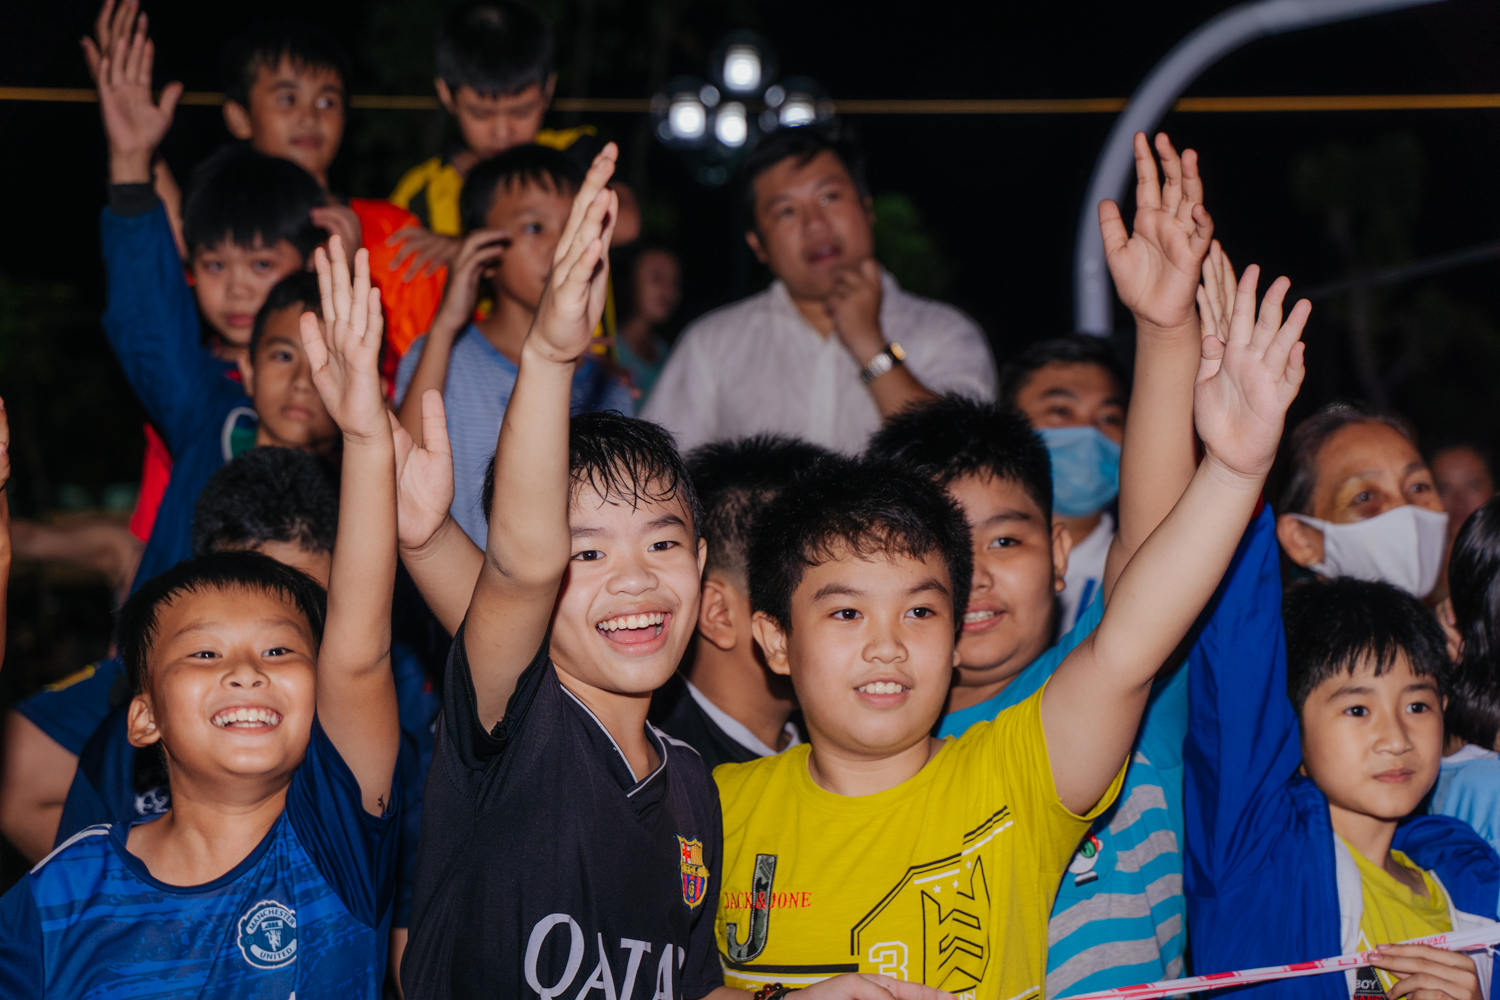 HÀNG NGÀN NGƯỜI DÂN QUẢNG NGÃI ĐỔ VỀ ĐÔNG YÊN RESIDENCES VUI TẾT TRUNG THU - Viet Nam Smart City